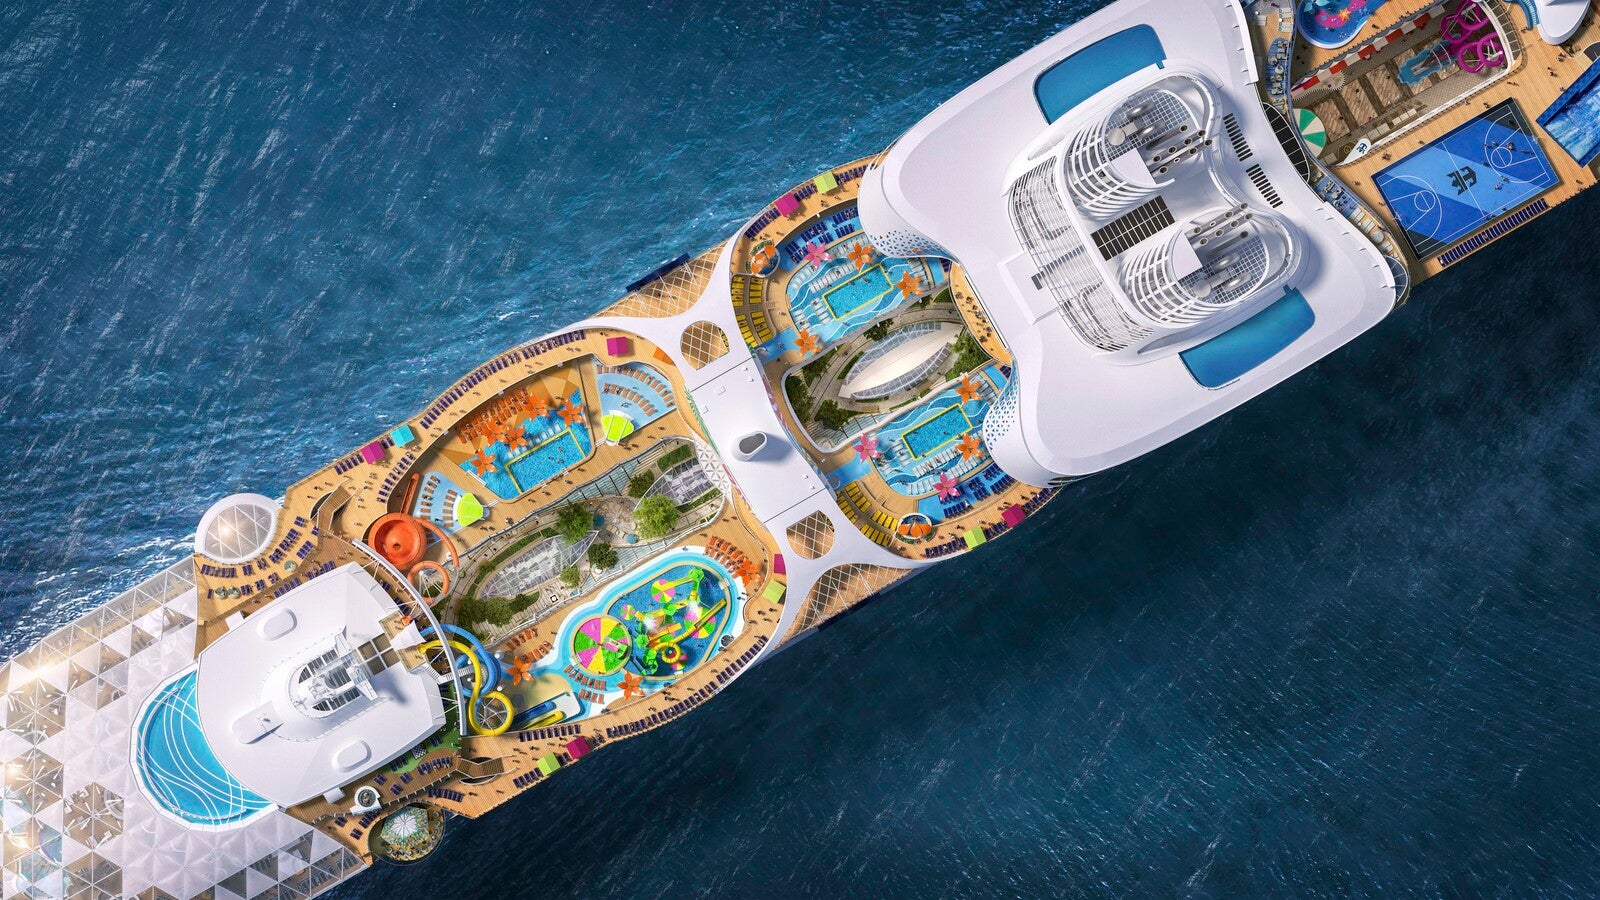 bahama cruise phone